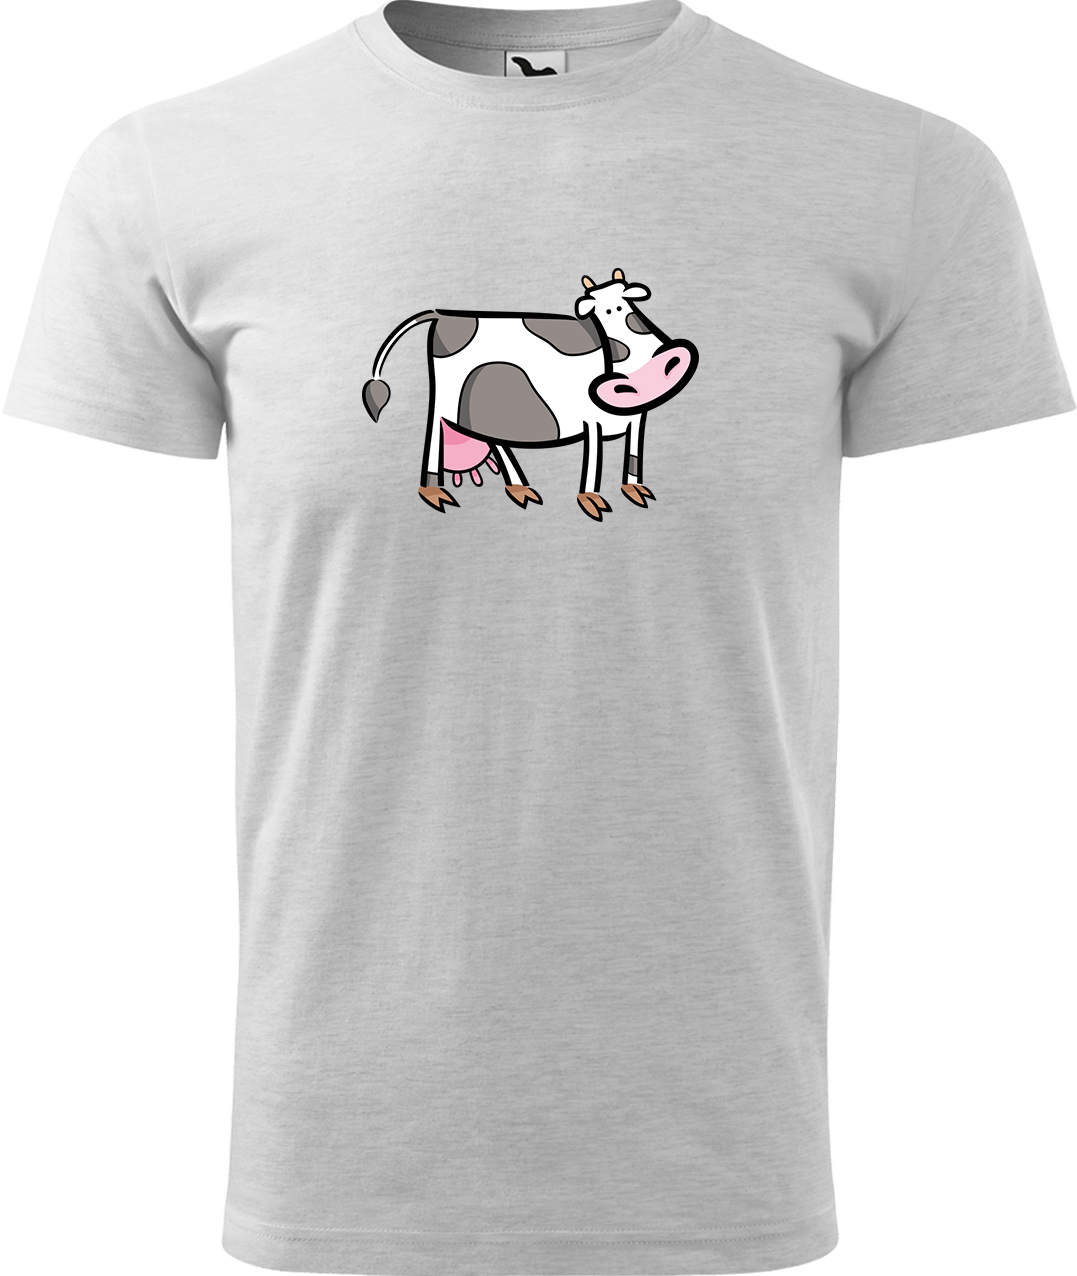 Pánské tričko s krávou - Kravička Velikost: S, Barva: Světle šedý melír (03), Střih: pánský